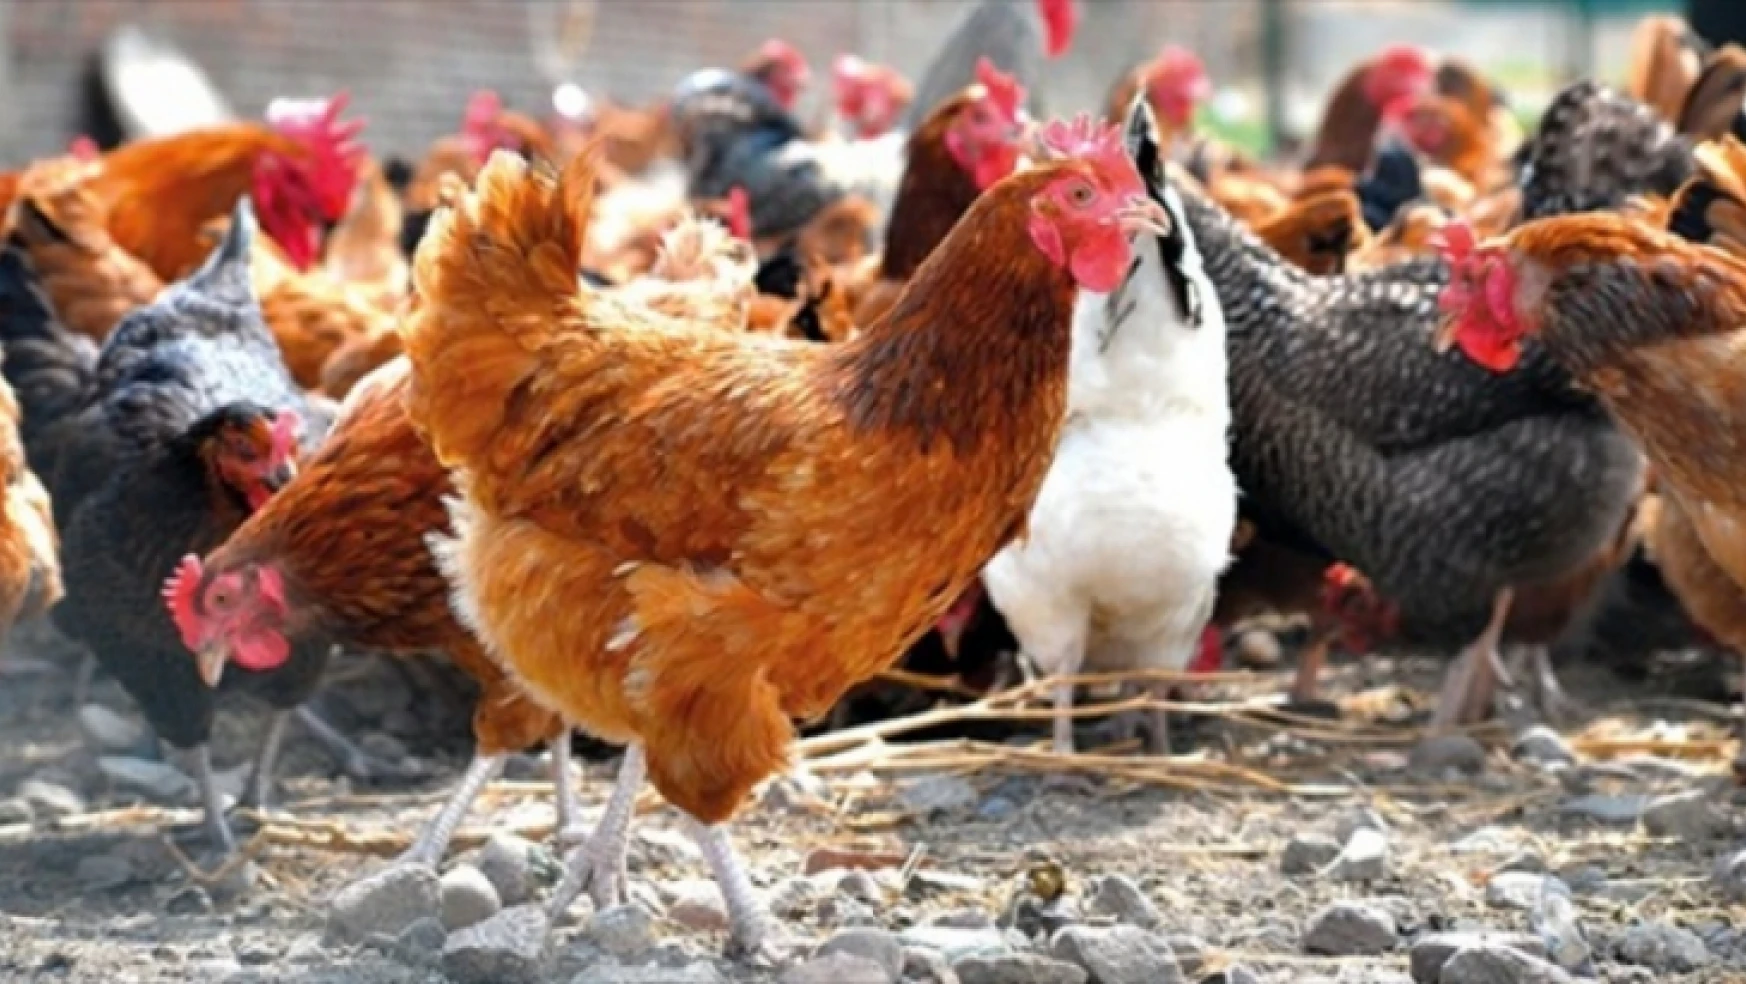 Tavuk eti üretimi 210 bin 77 ton, tavuk yumurtası üretimi 1,72 milyar adet olarak gerçekleşti